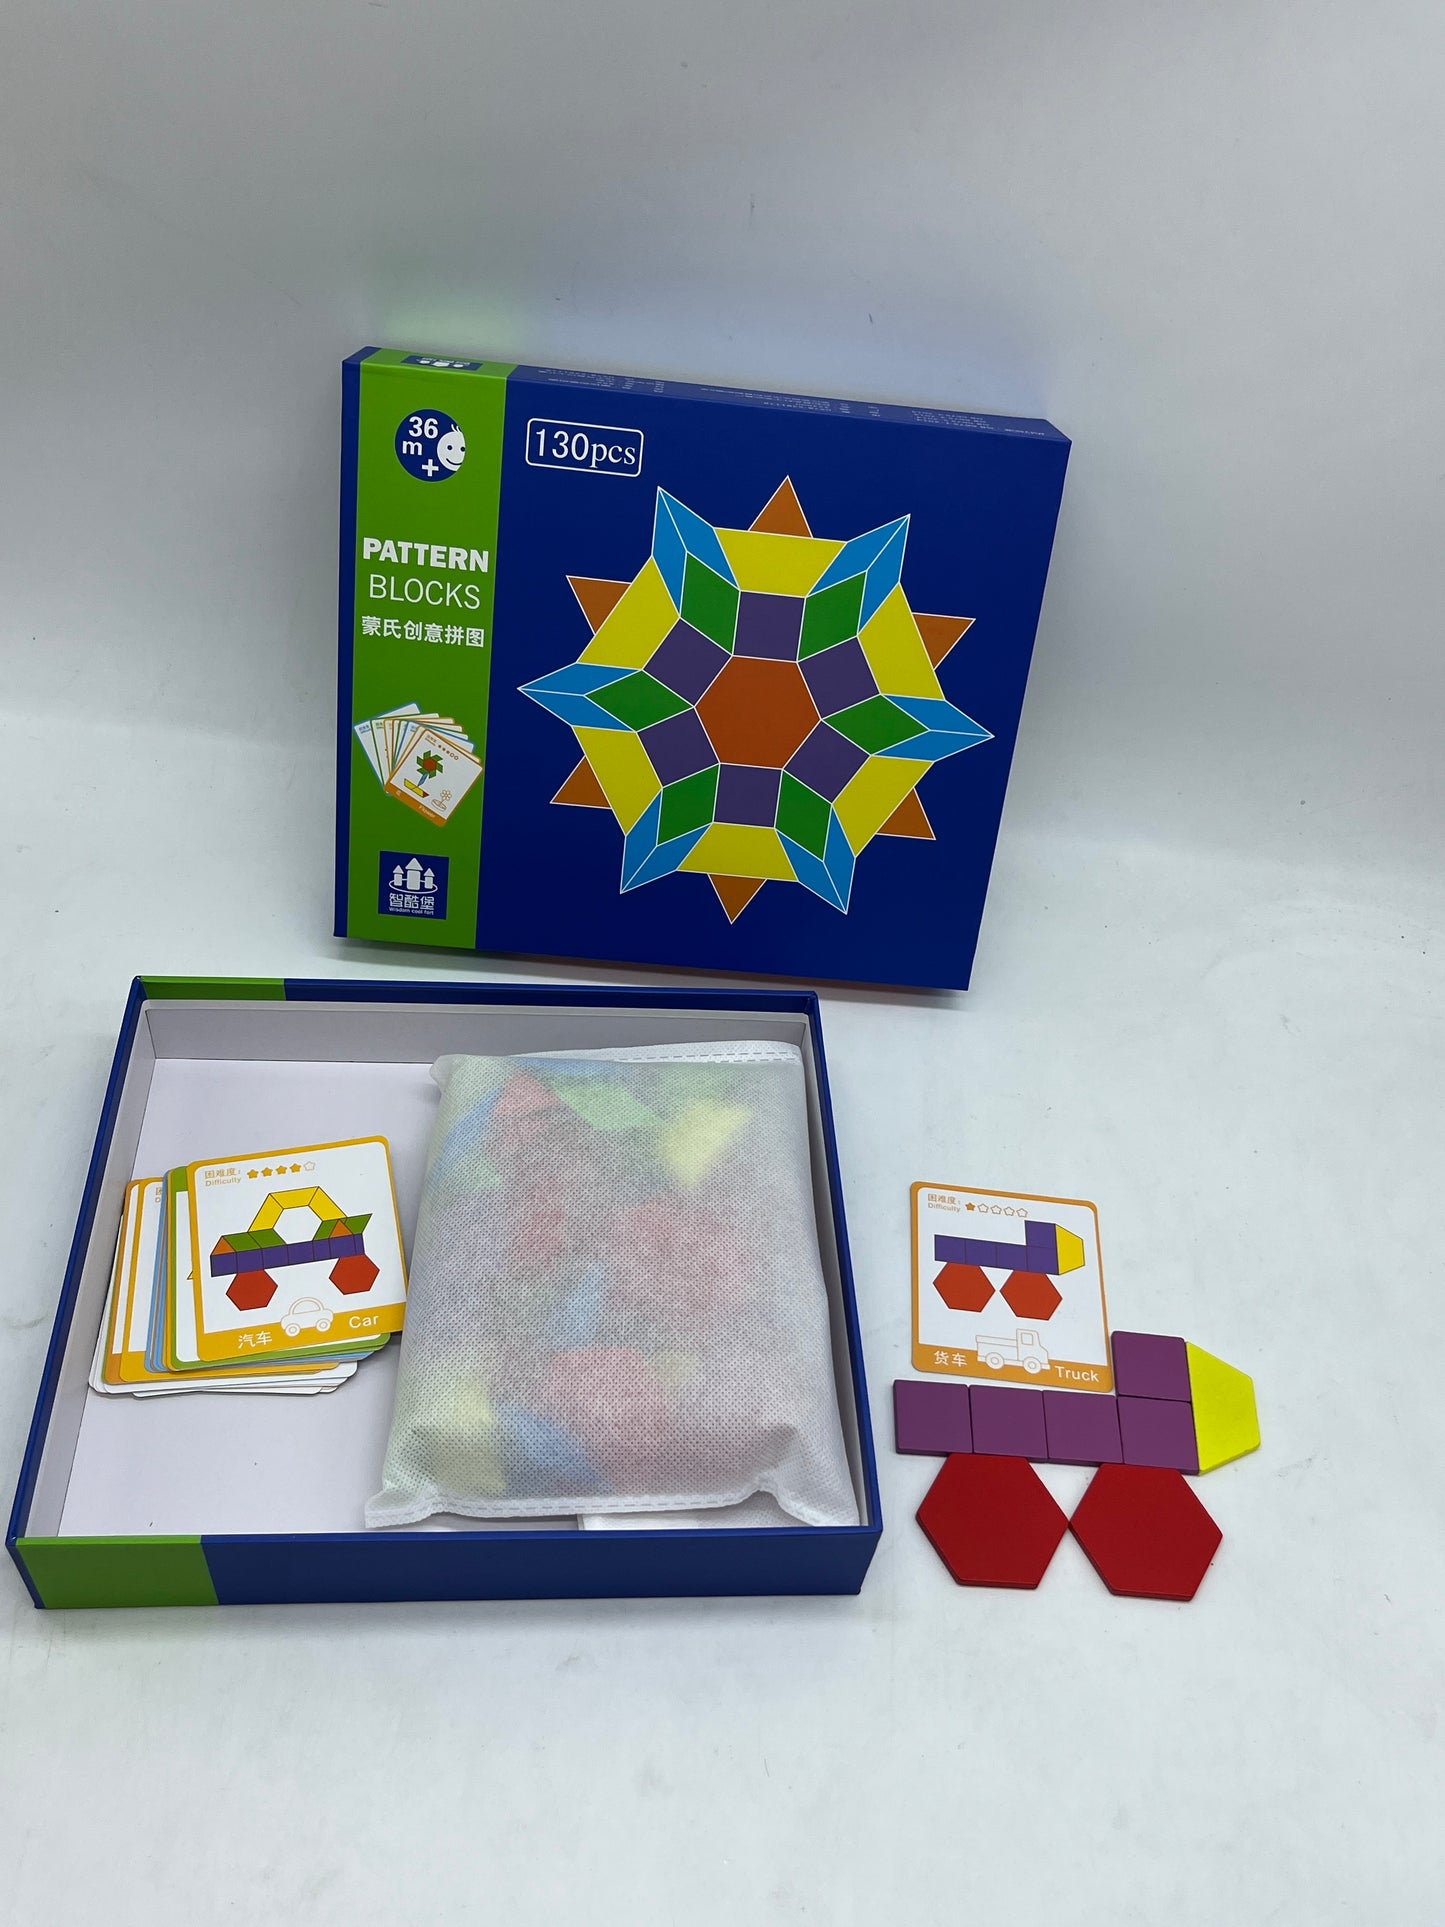 Jouet jeu activités apprentissage 
Puzzle en bois Type Montessori Tangram Géométrie motif couleur forme avec ces 130 pièces en bois Neuf